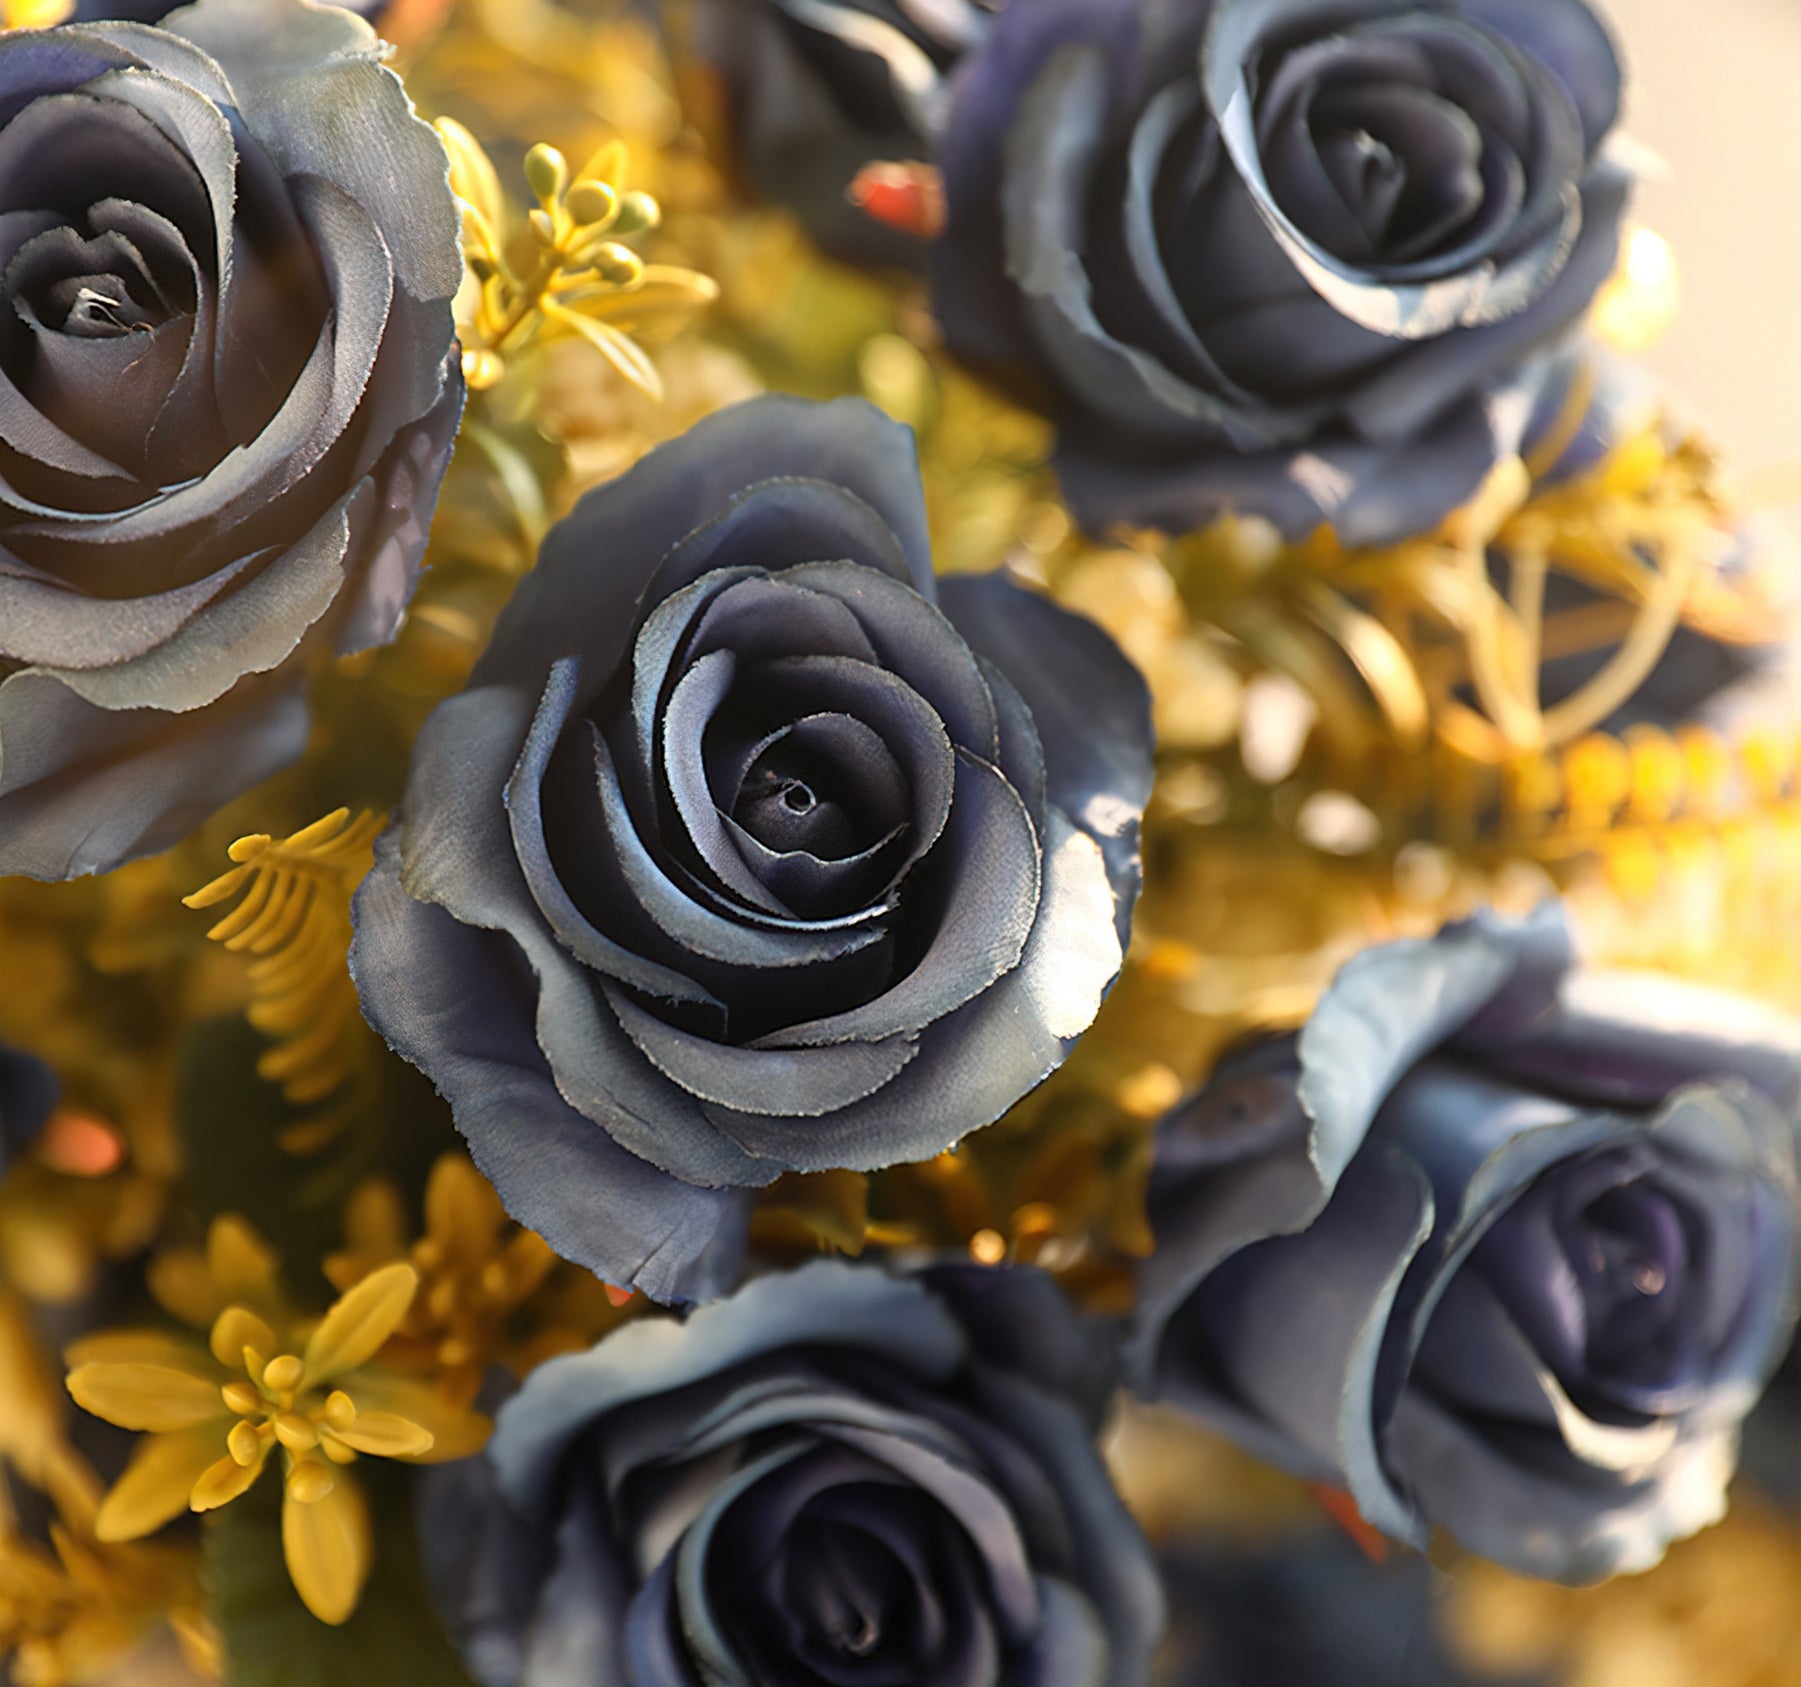 باقة اصطناعية من الحرير العتيق بسبعة رؤوس-زهور صناعية أنيقة لحفلات الزفاف وديكور المنزل-مثالية للقطع المركزية والهدايا